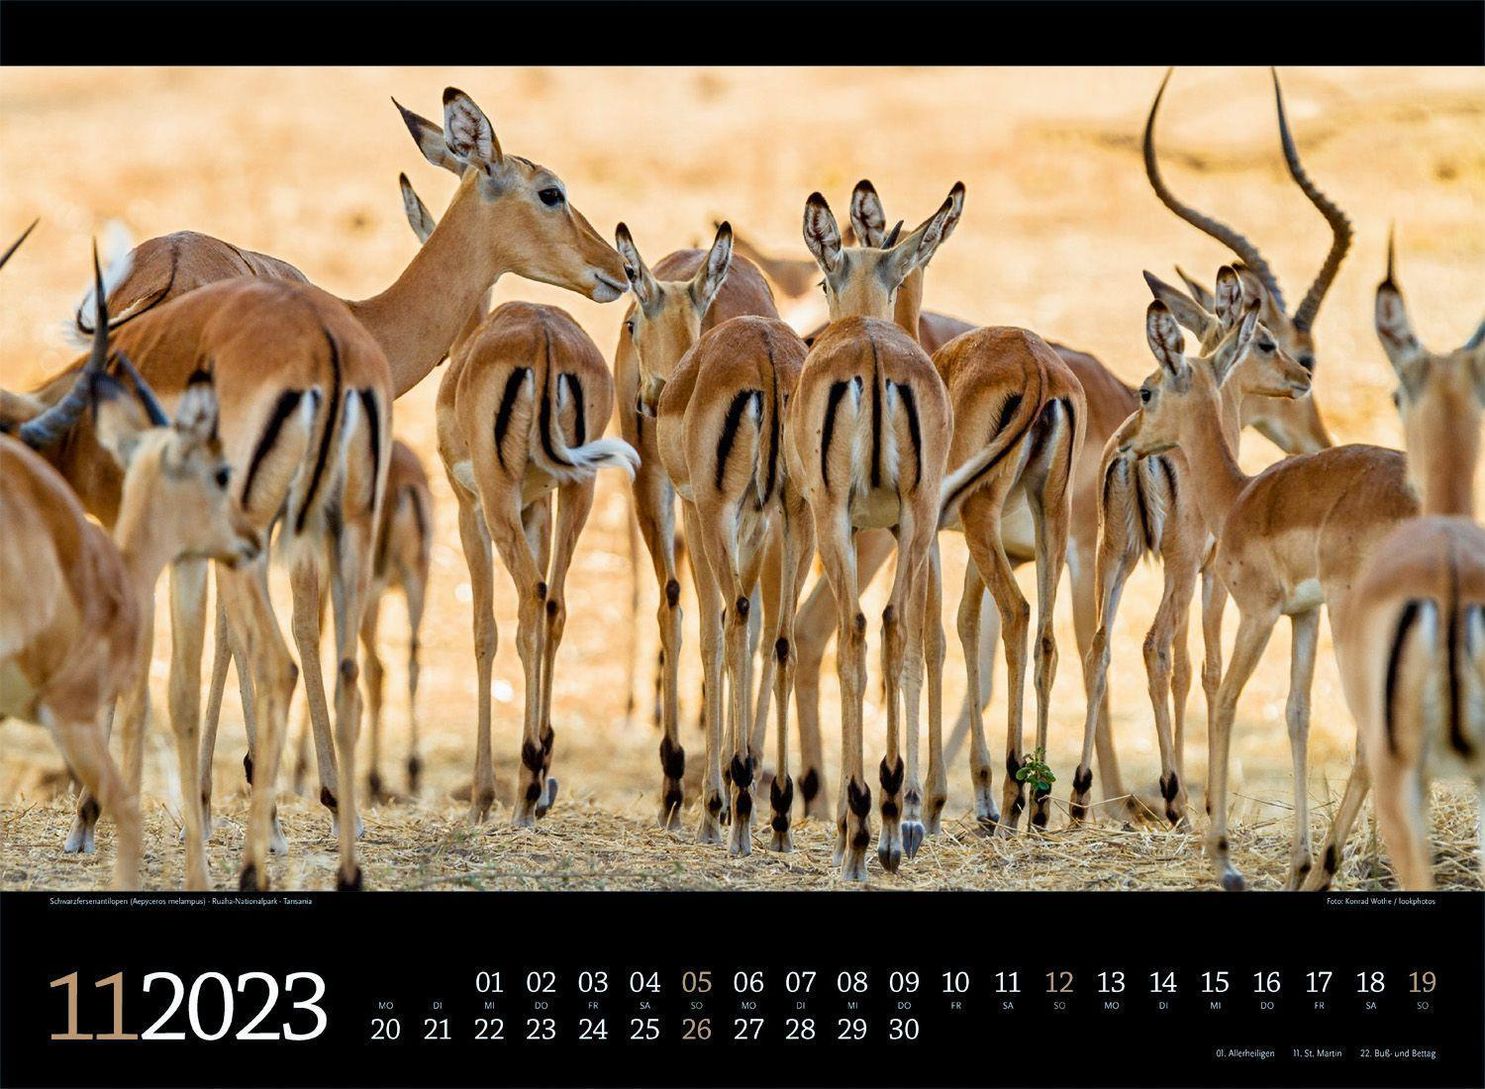 Tierwelt Afrika Kalender 2023 - Kalender bei Weltbild.at kaufen